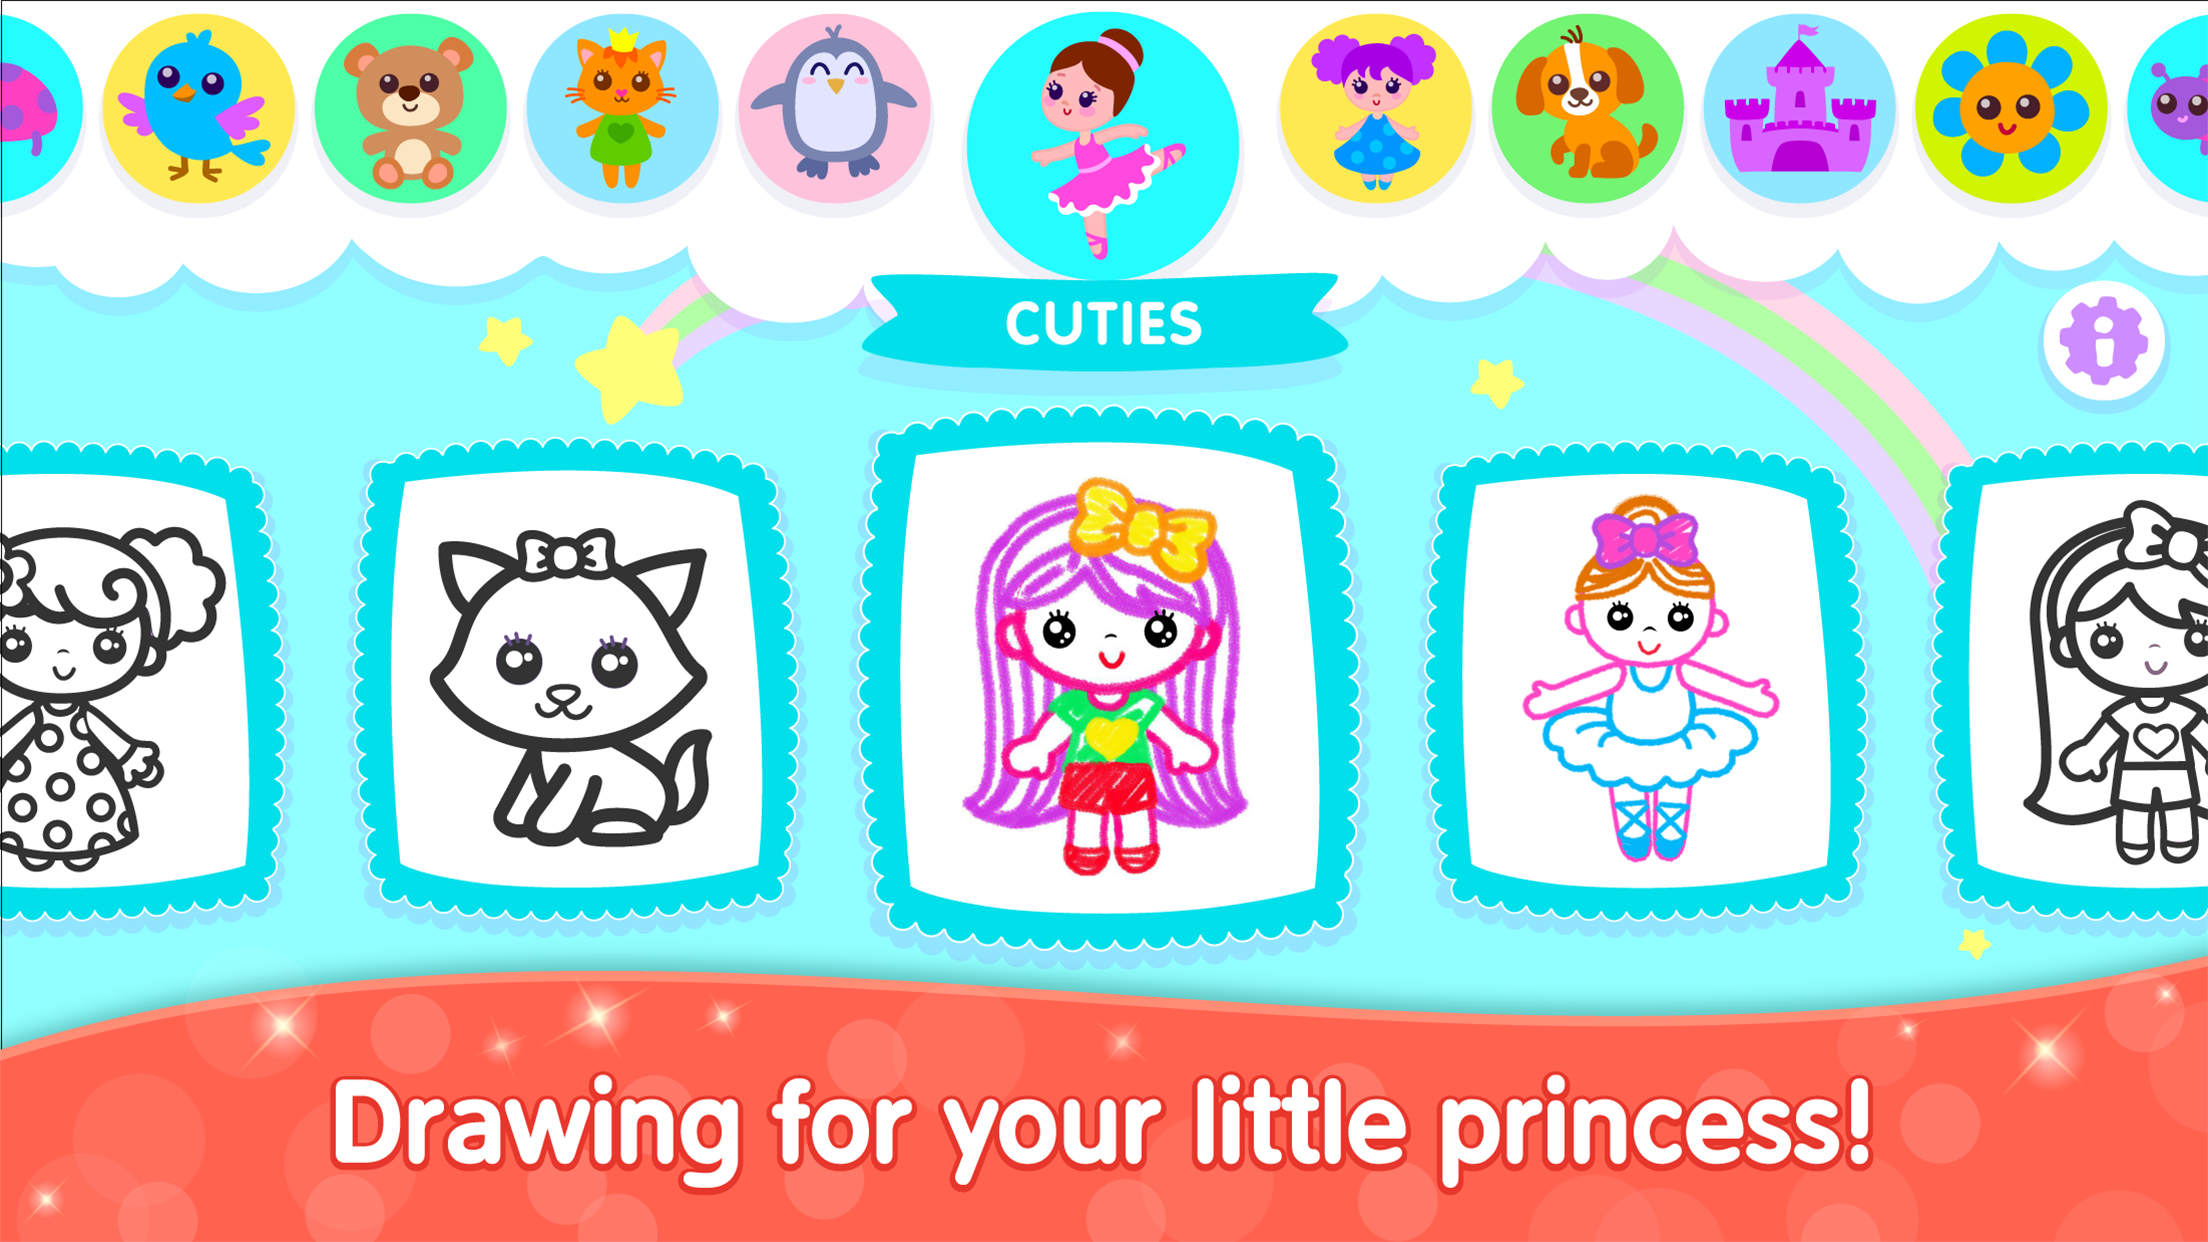 Screenshot 1 of Bini Game Drawing untuk aplikasi anak-anak 2.9.0